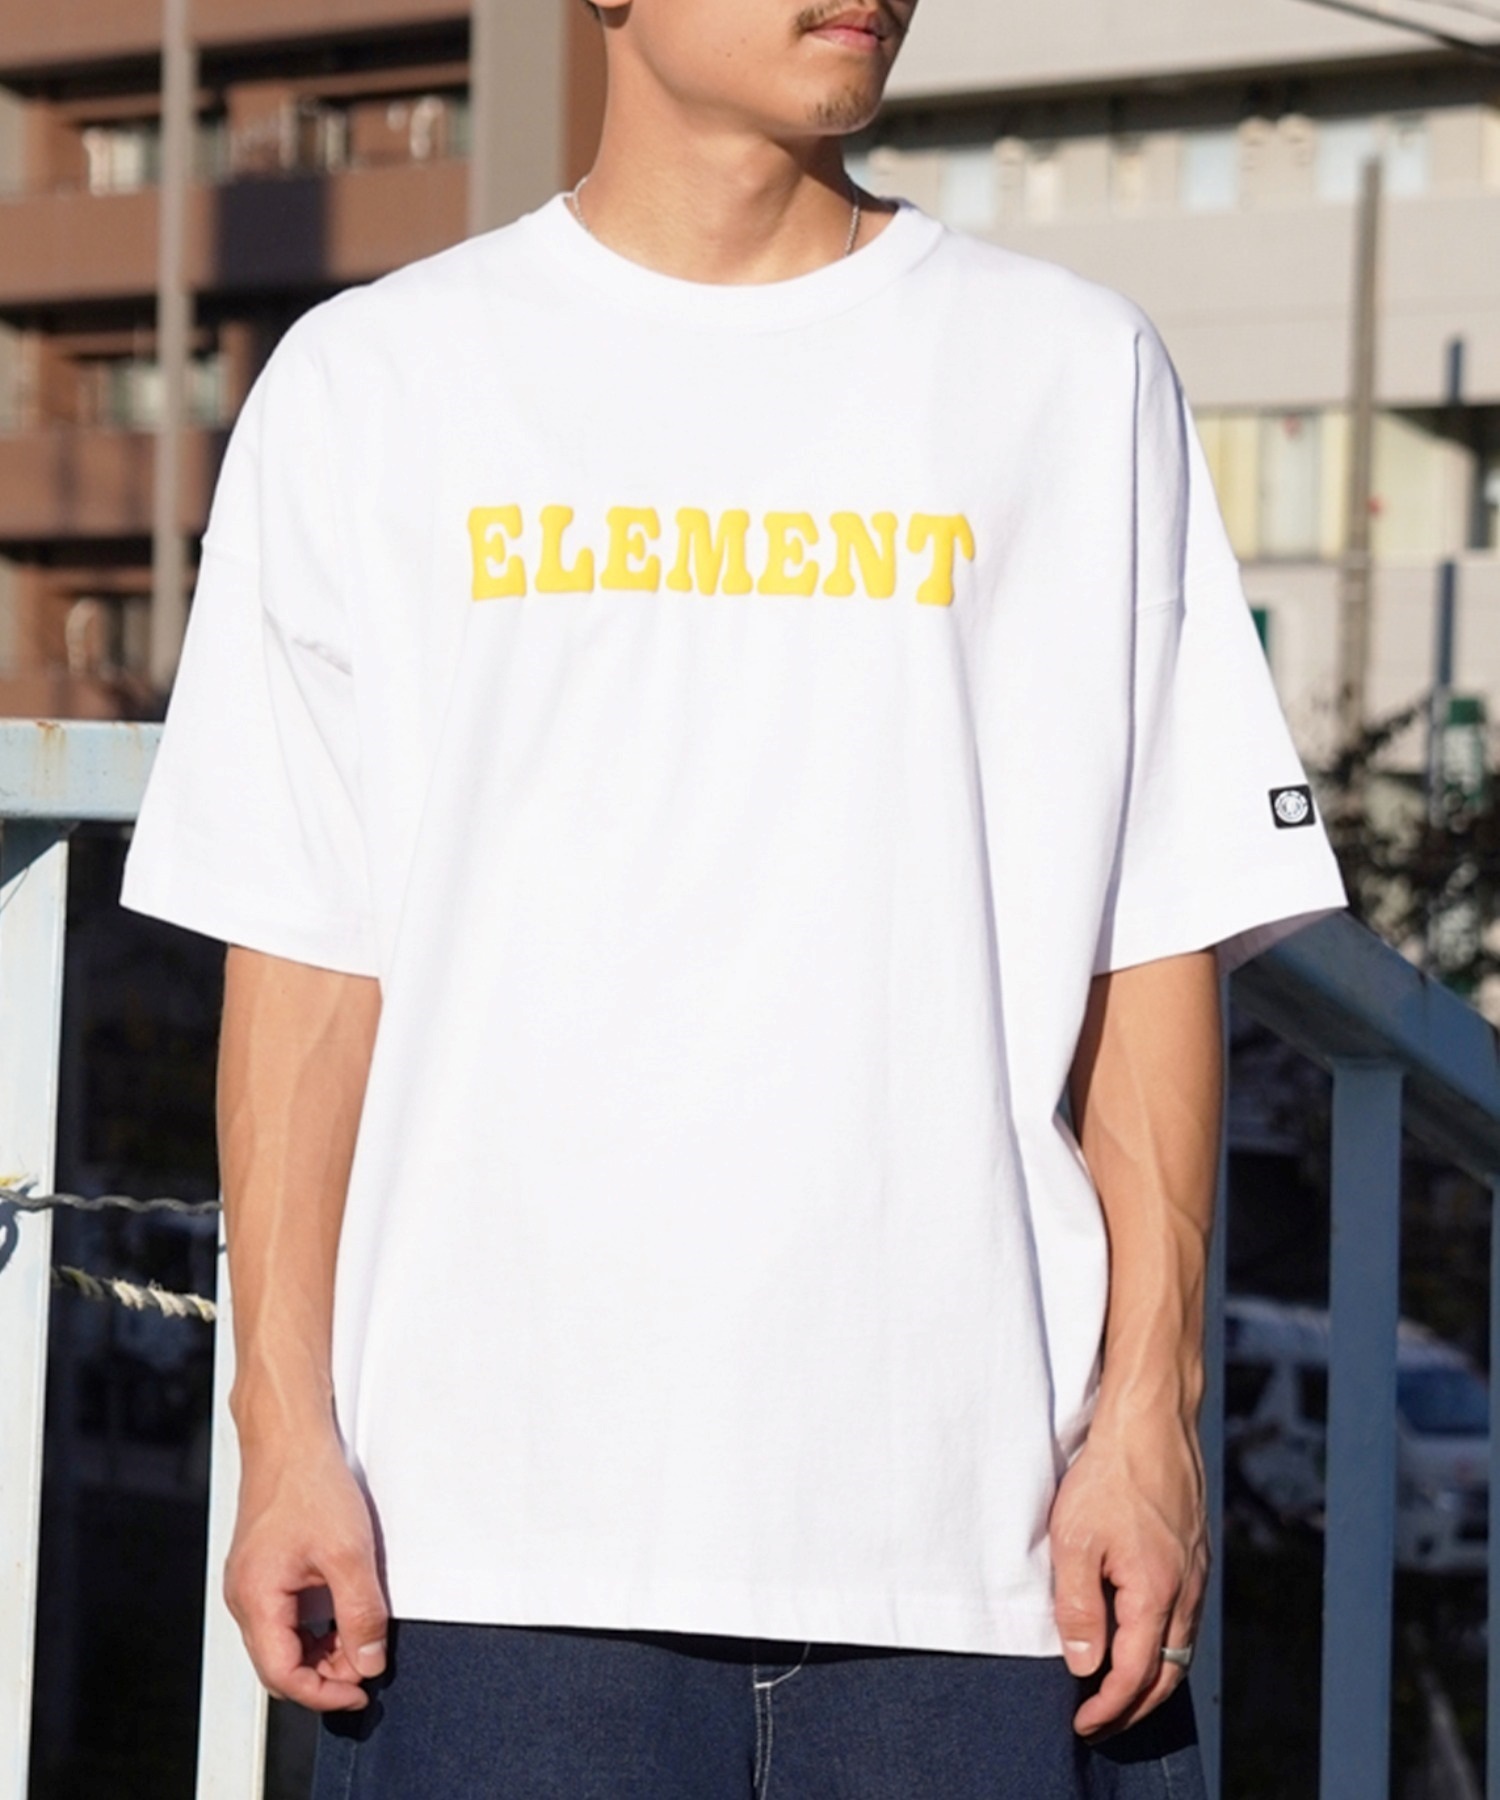 【マトメガイ対象】ELEMENT エレメント メンズ 半袖 Tシャツ バックプリント オーバーサイズ クルーネック アーチロゴ フラワーモチーフ BE021-240(WHT-M)